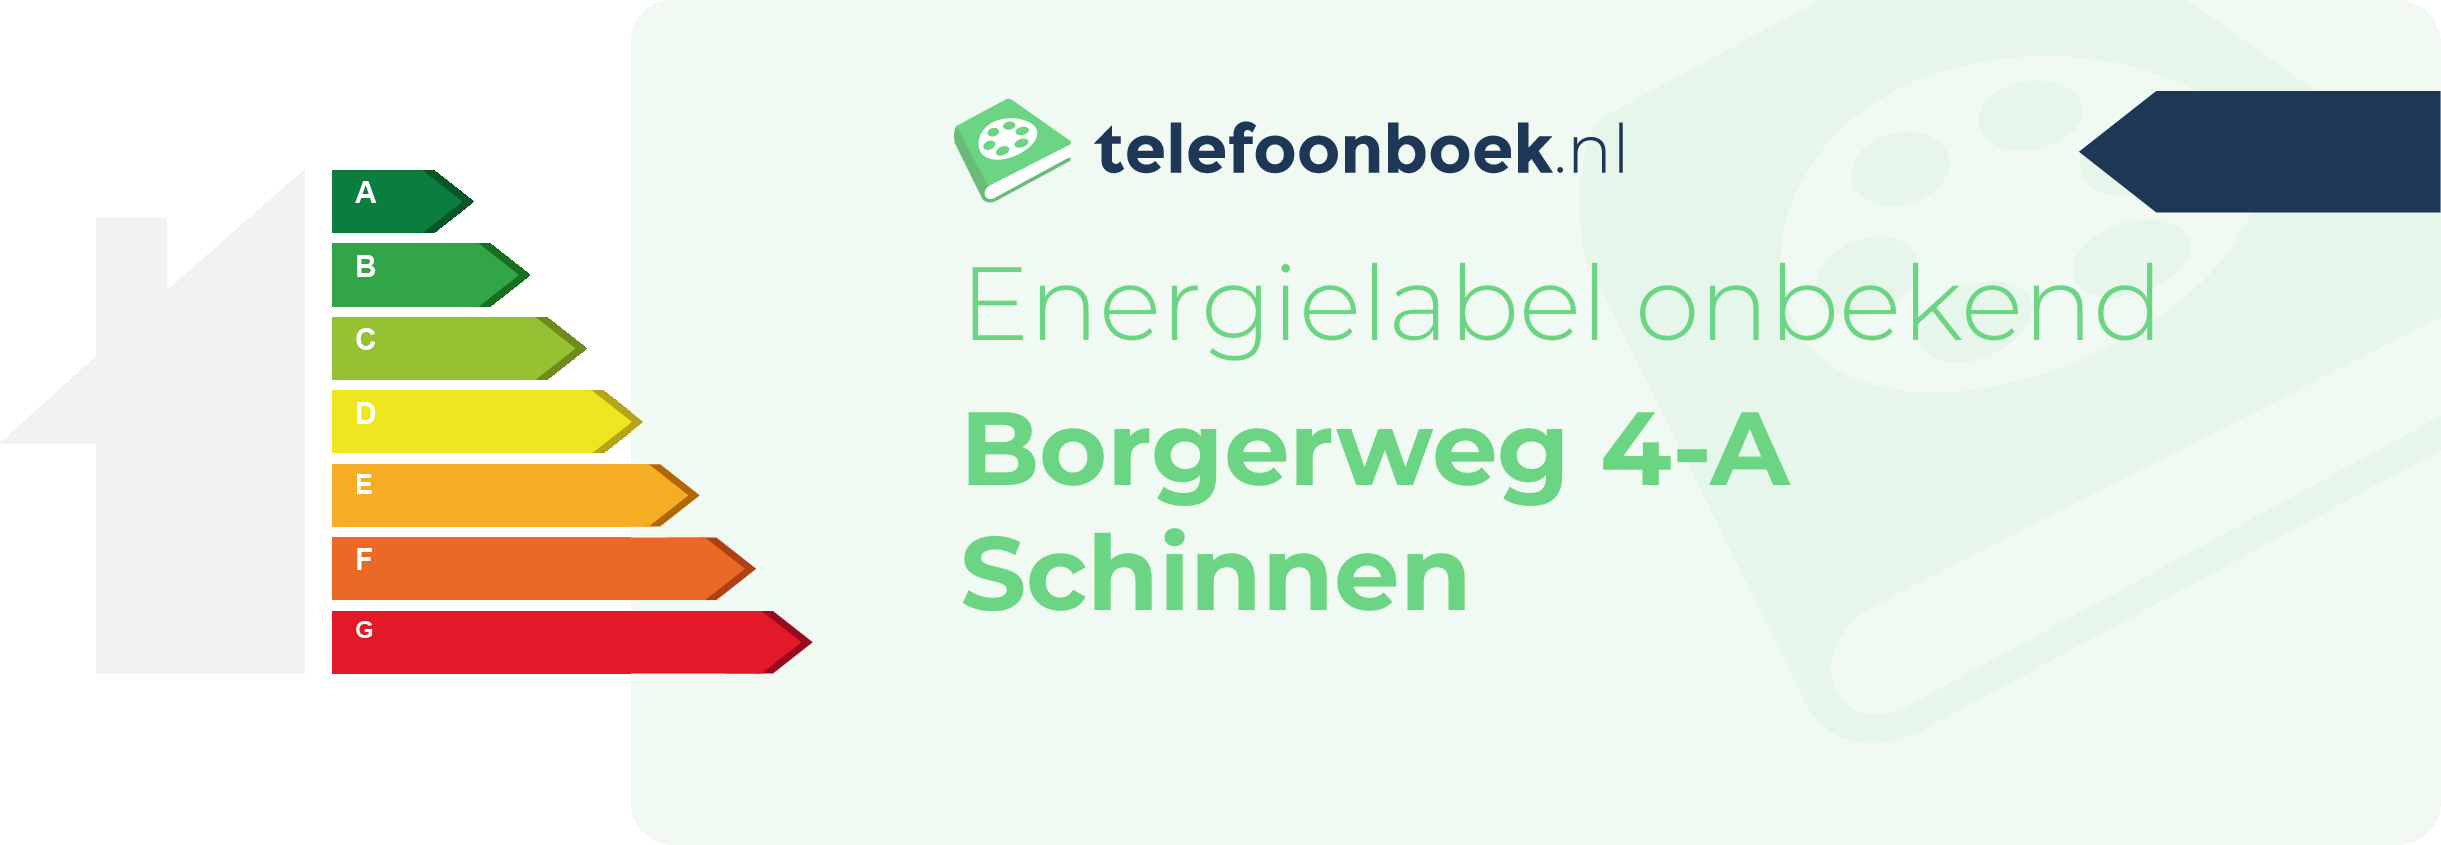 Energielabel Borgerweg 4-A Schinnen